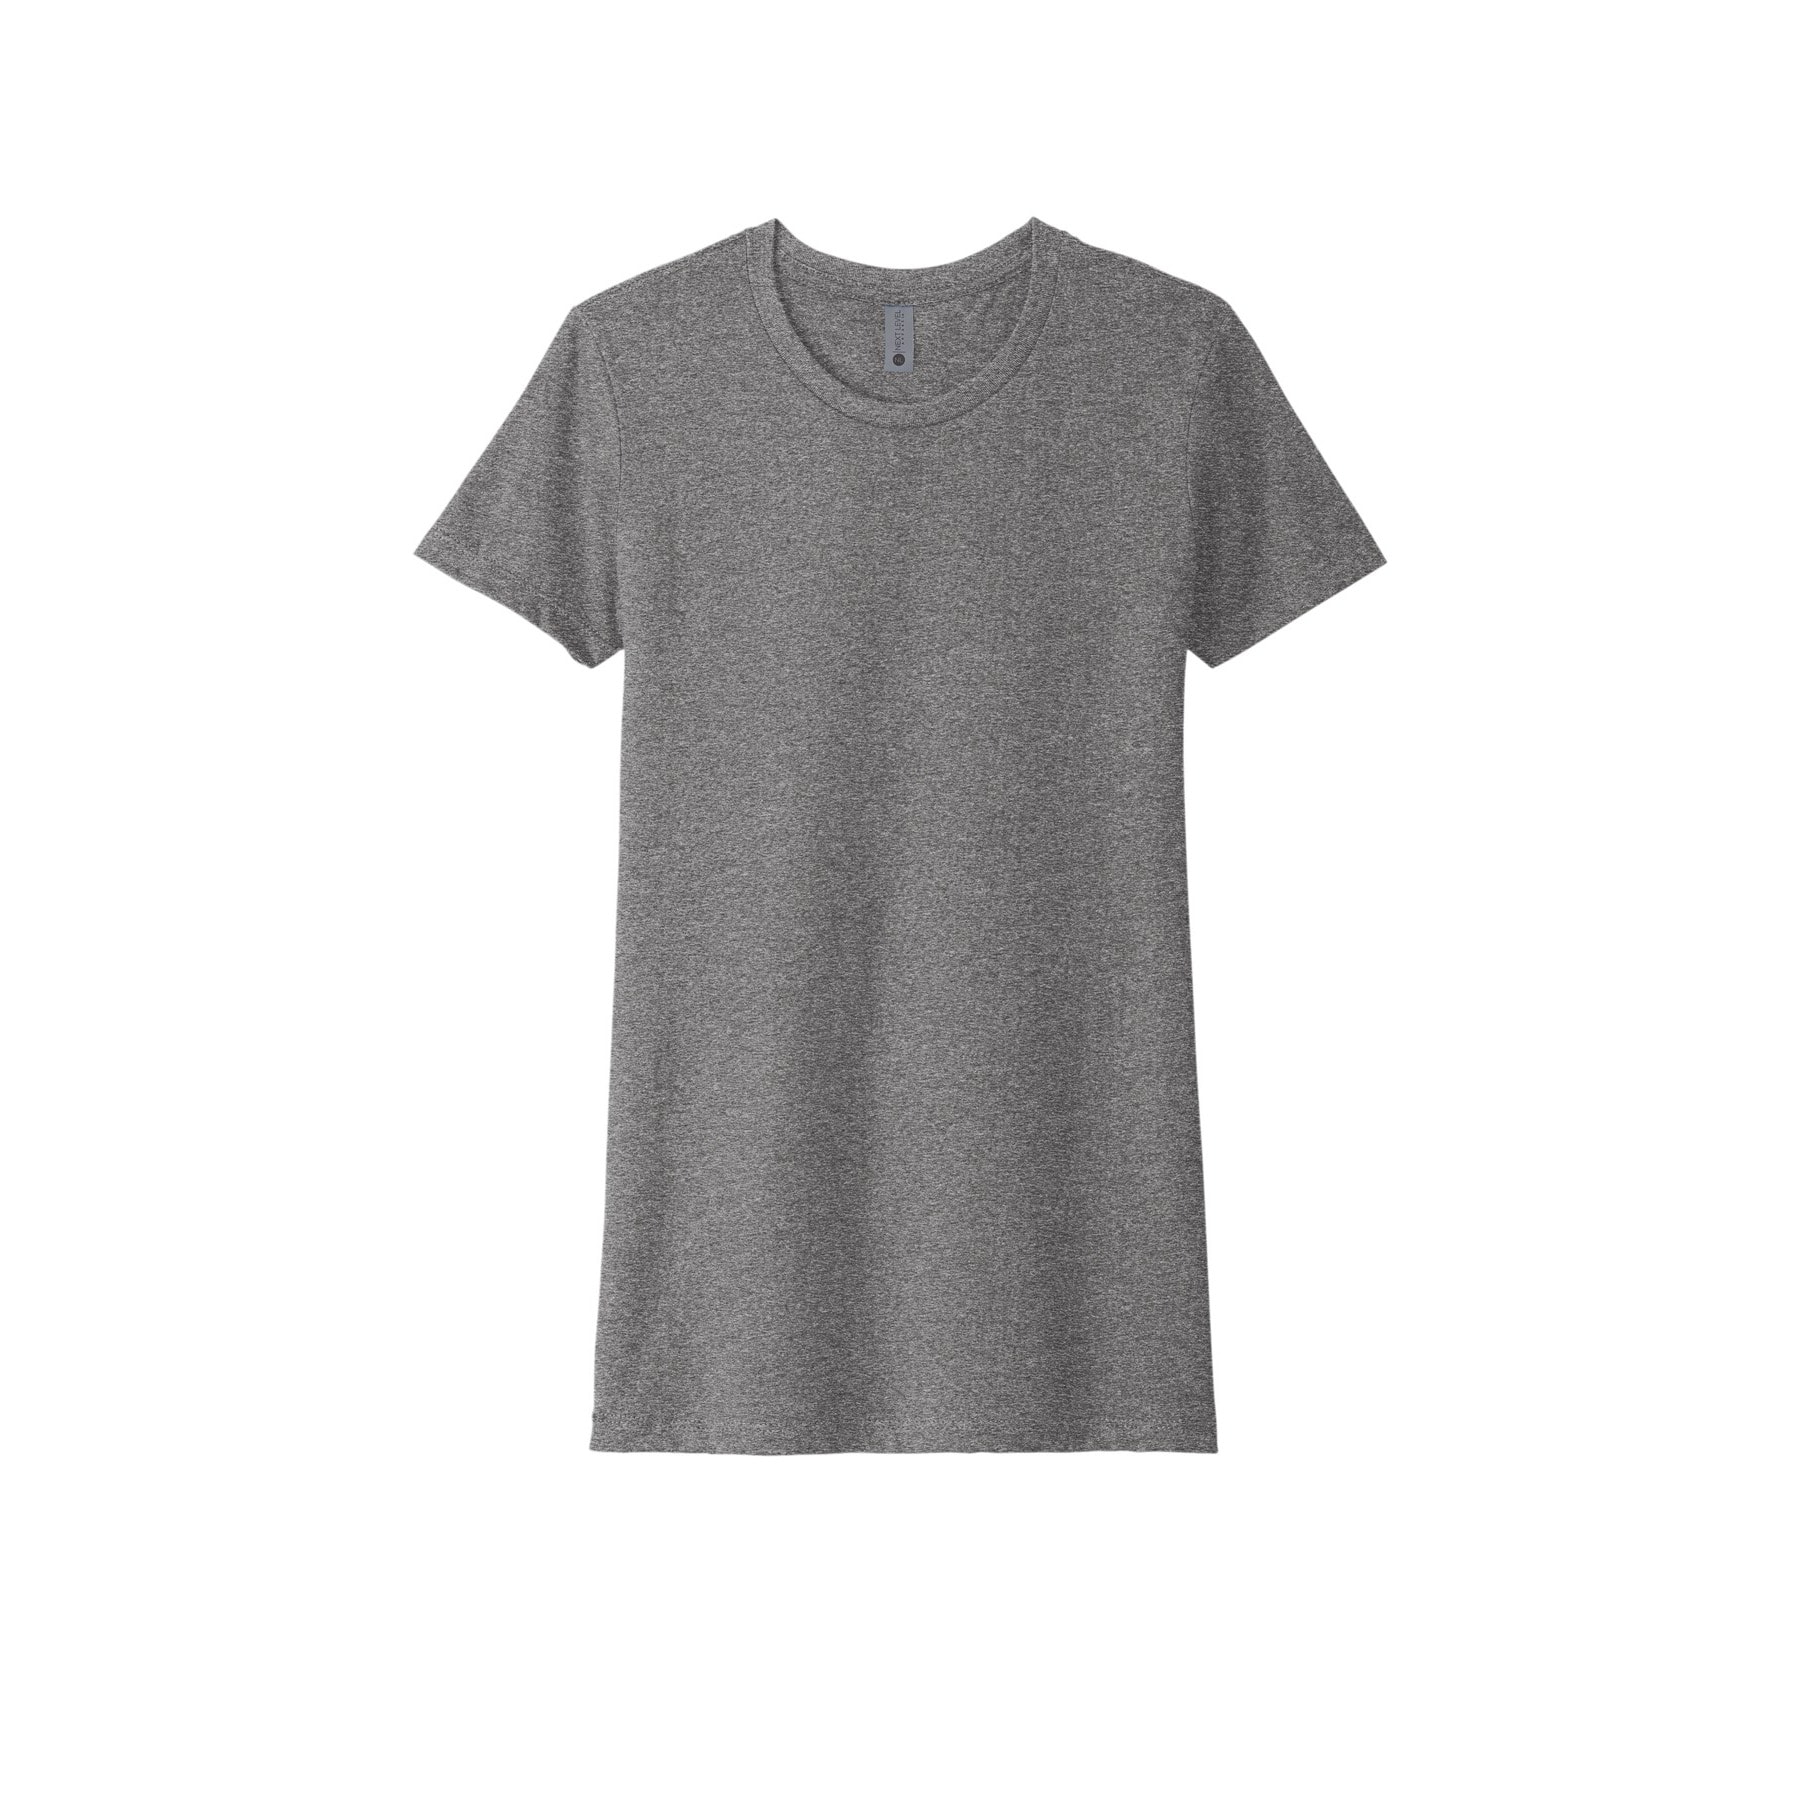 Next Level® Neutrals Women's CVC T-Shirt